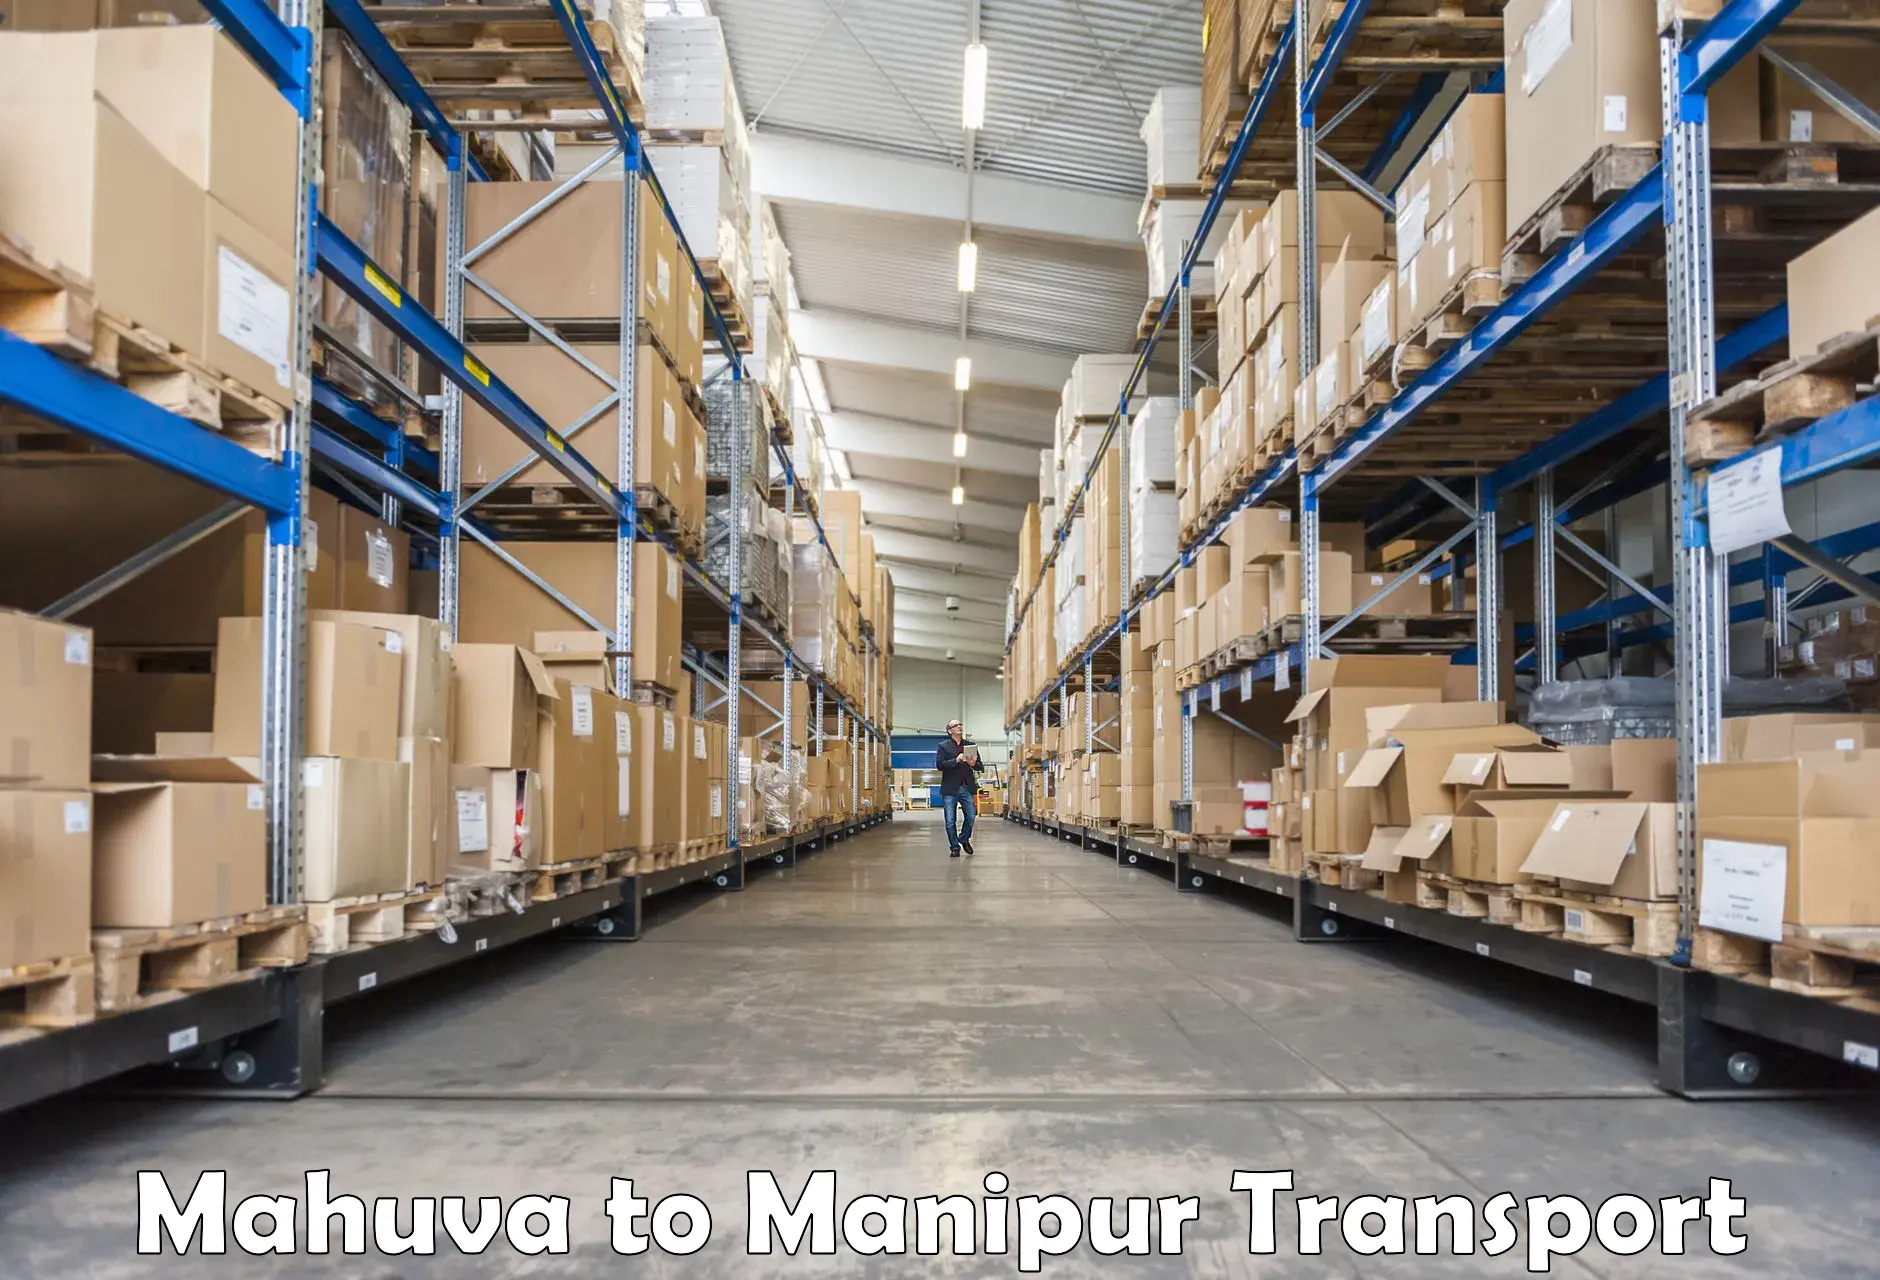 Land transport services in Mahuva to Churachandpur